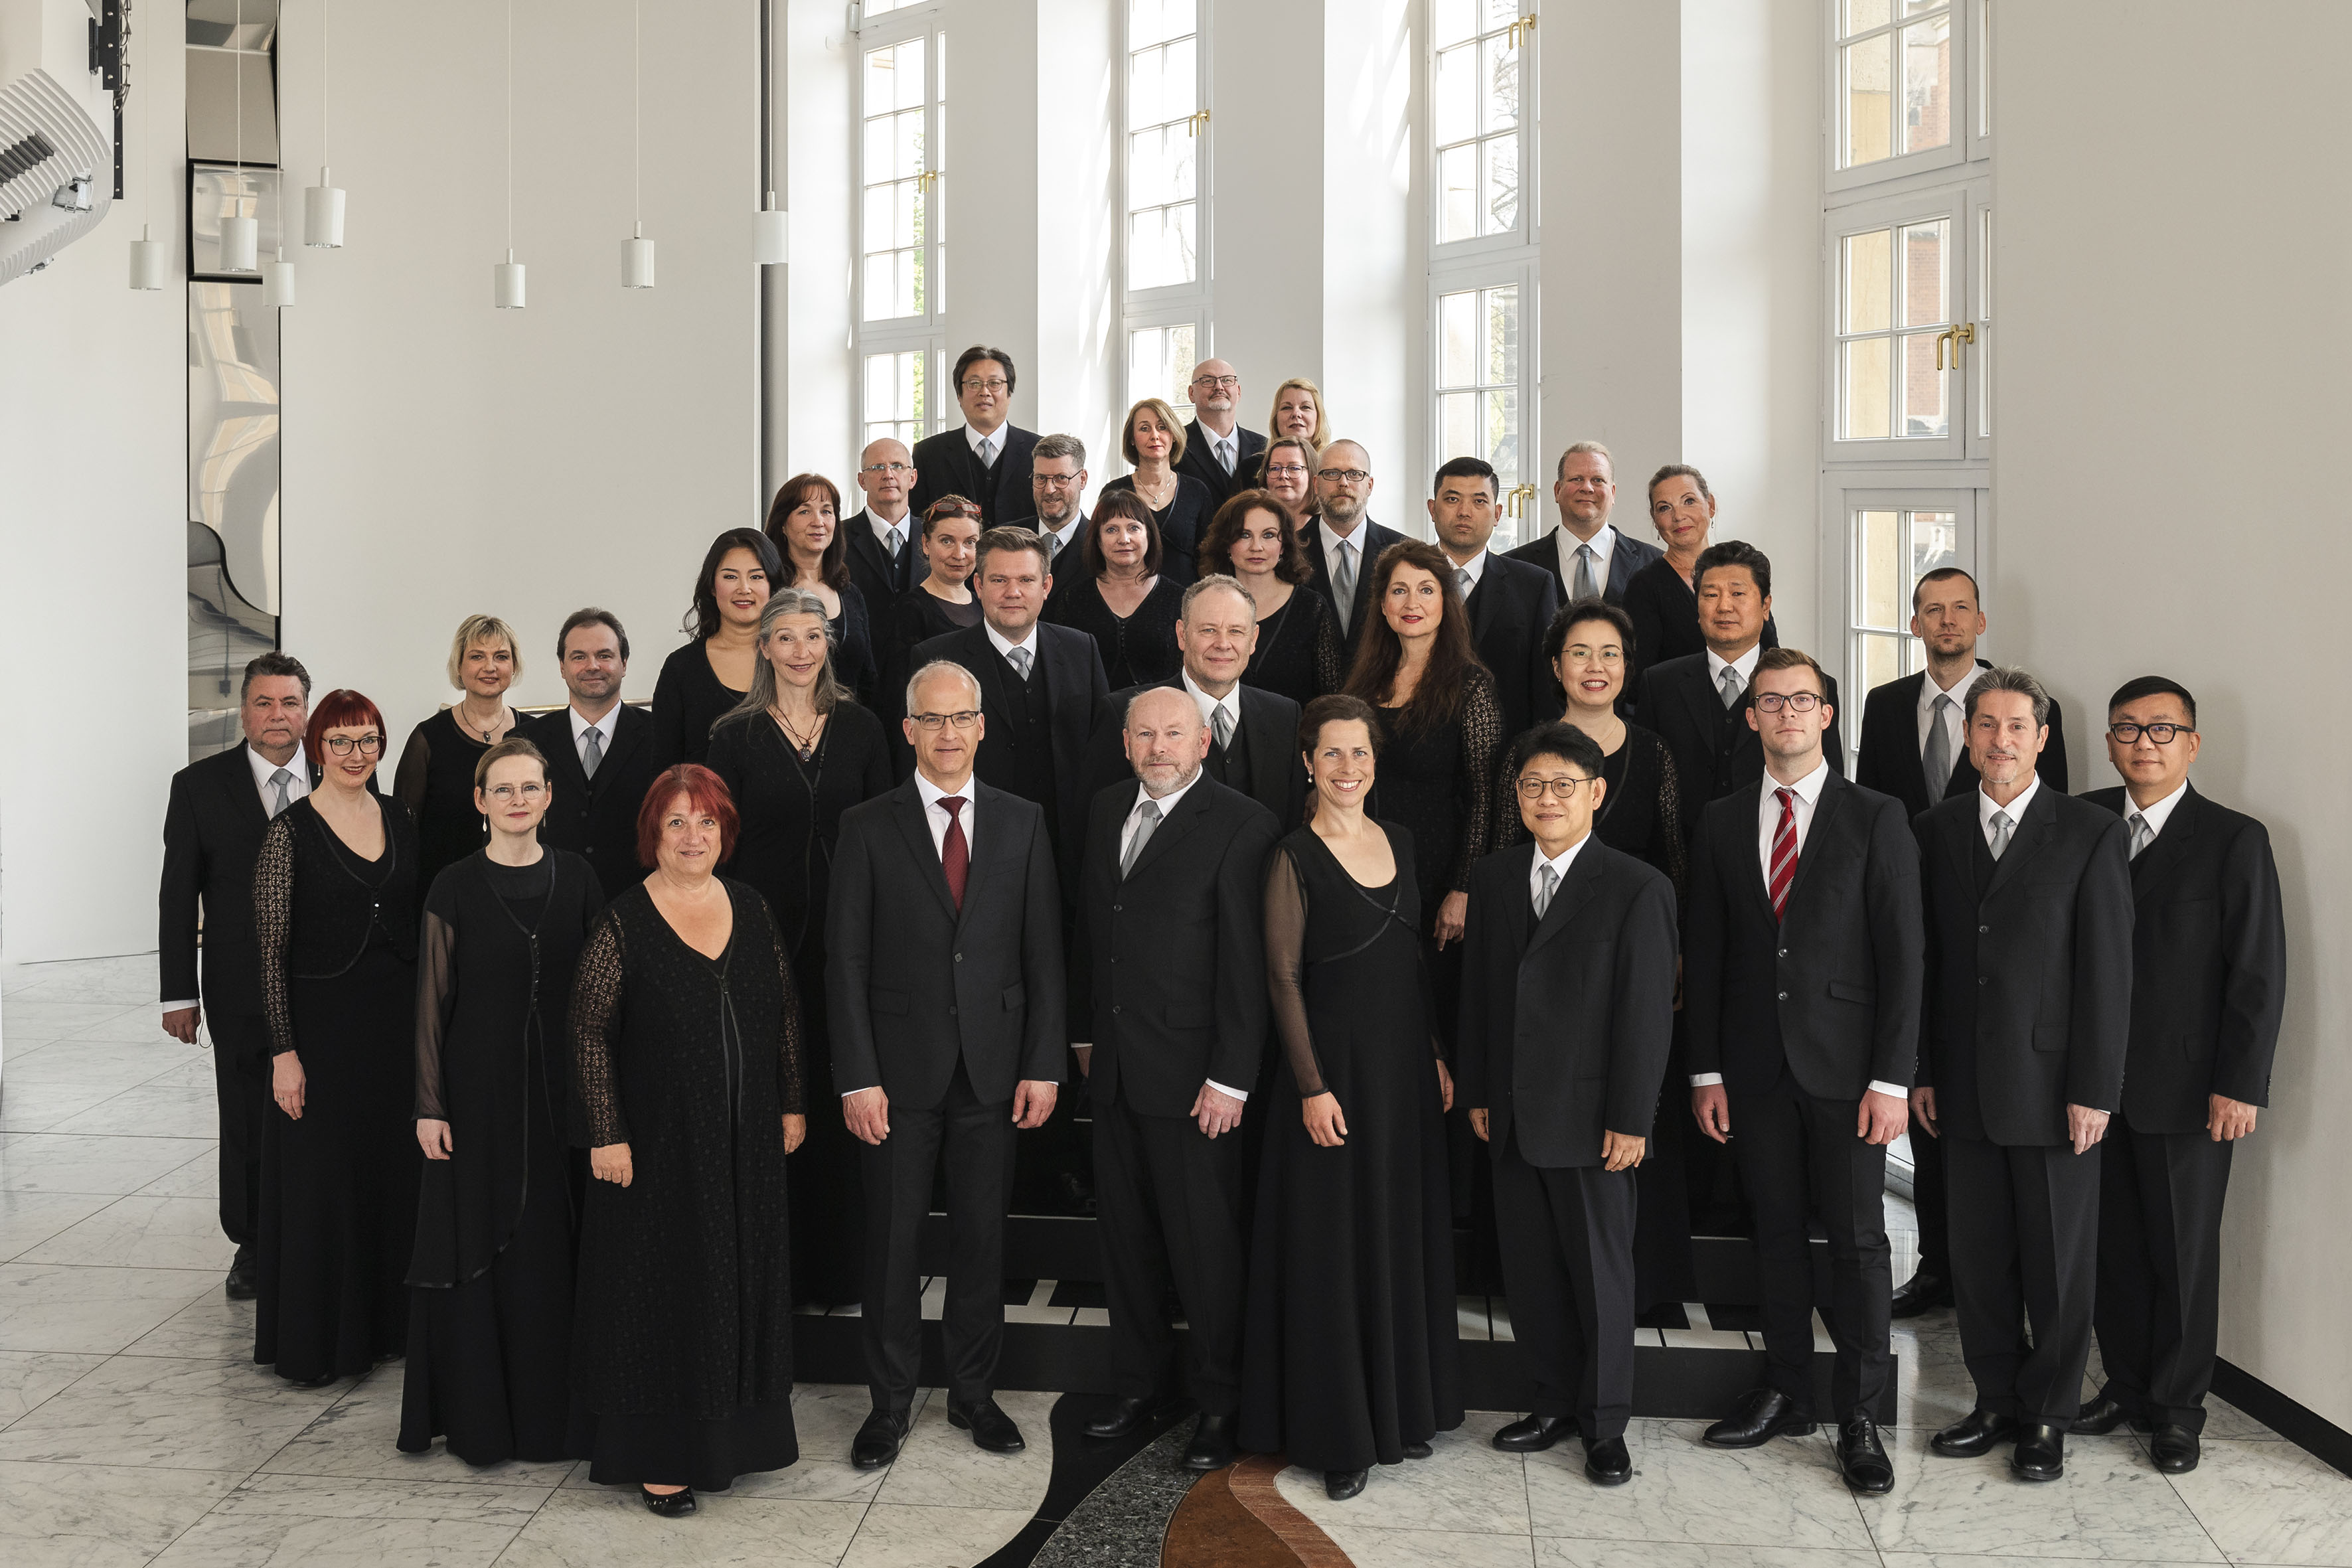 Foto der Mitglieder des Chemnitzer Opernchores, alle sind schwarz gekleidet und stehen im Rangfoyer des Chemnitzer Opernhauses